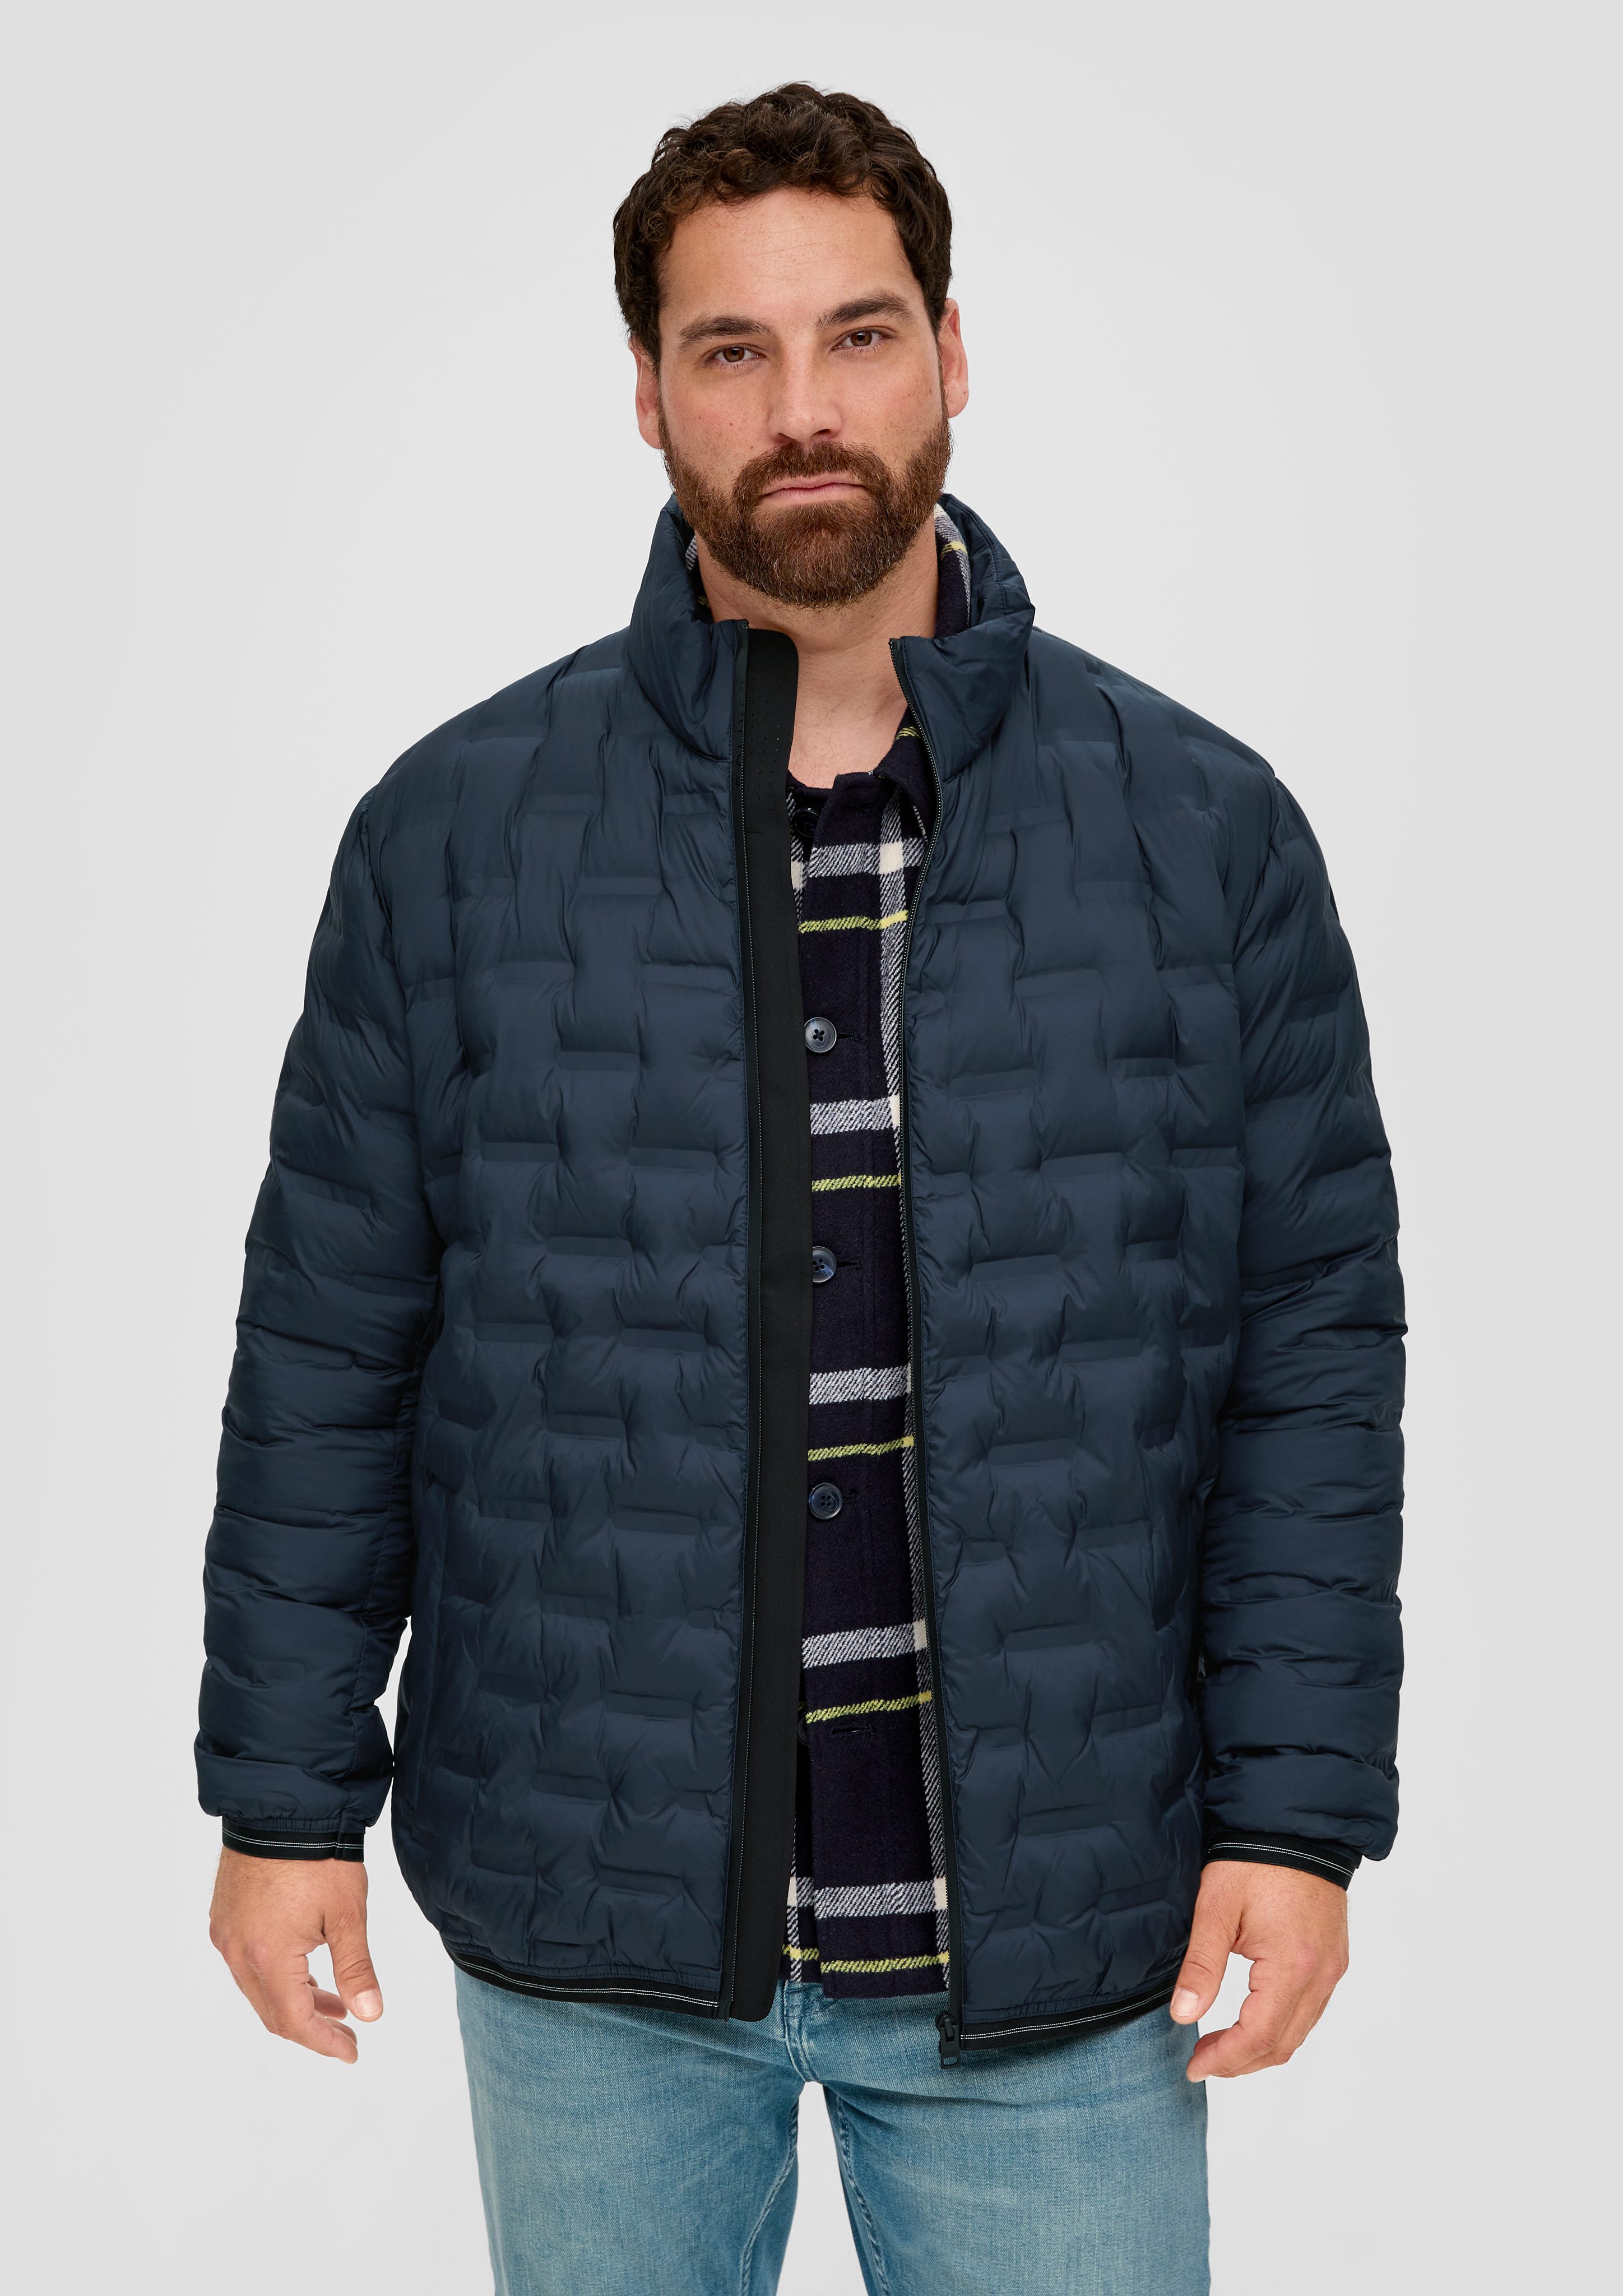 s.Oliver Outdoorjacke Jacke mit Reißverschlusstaschen navy Applikation